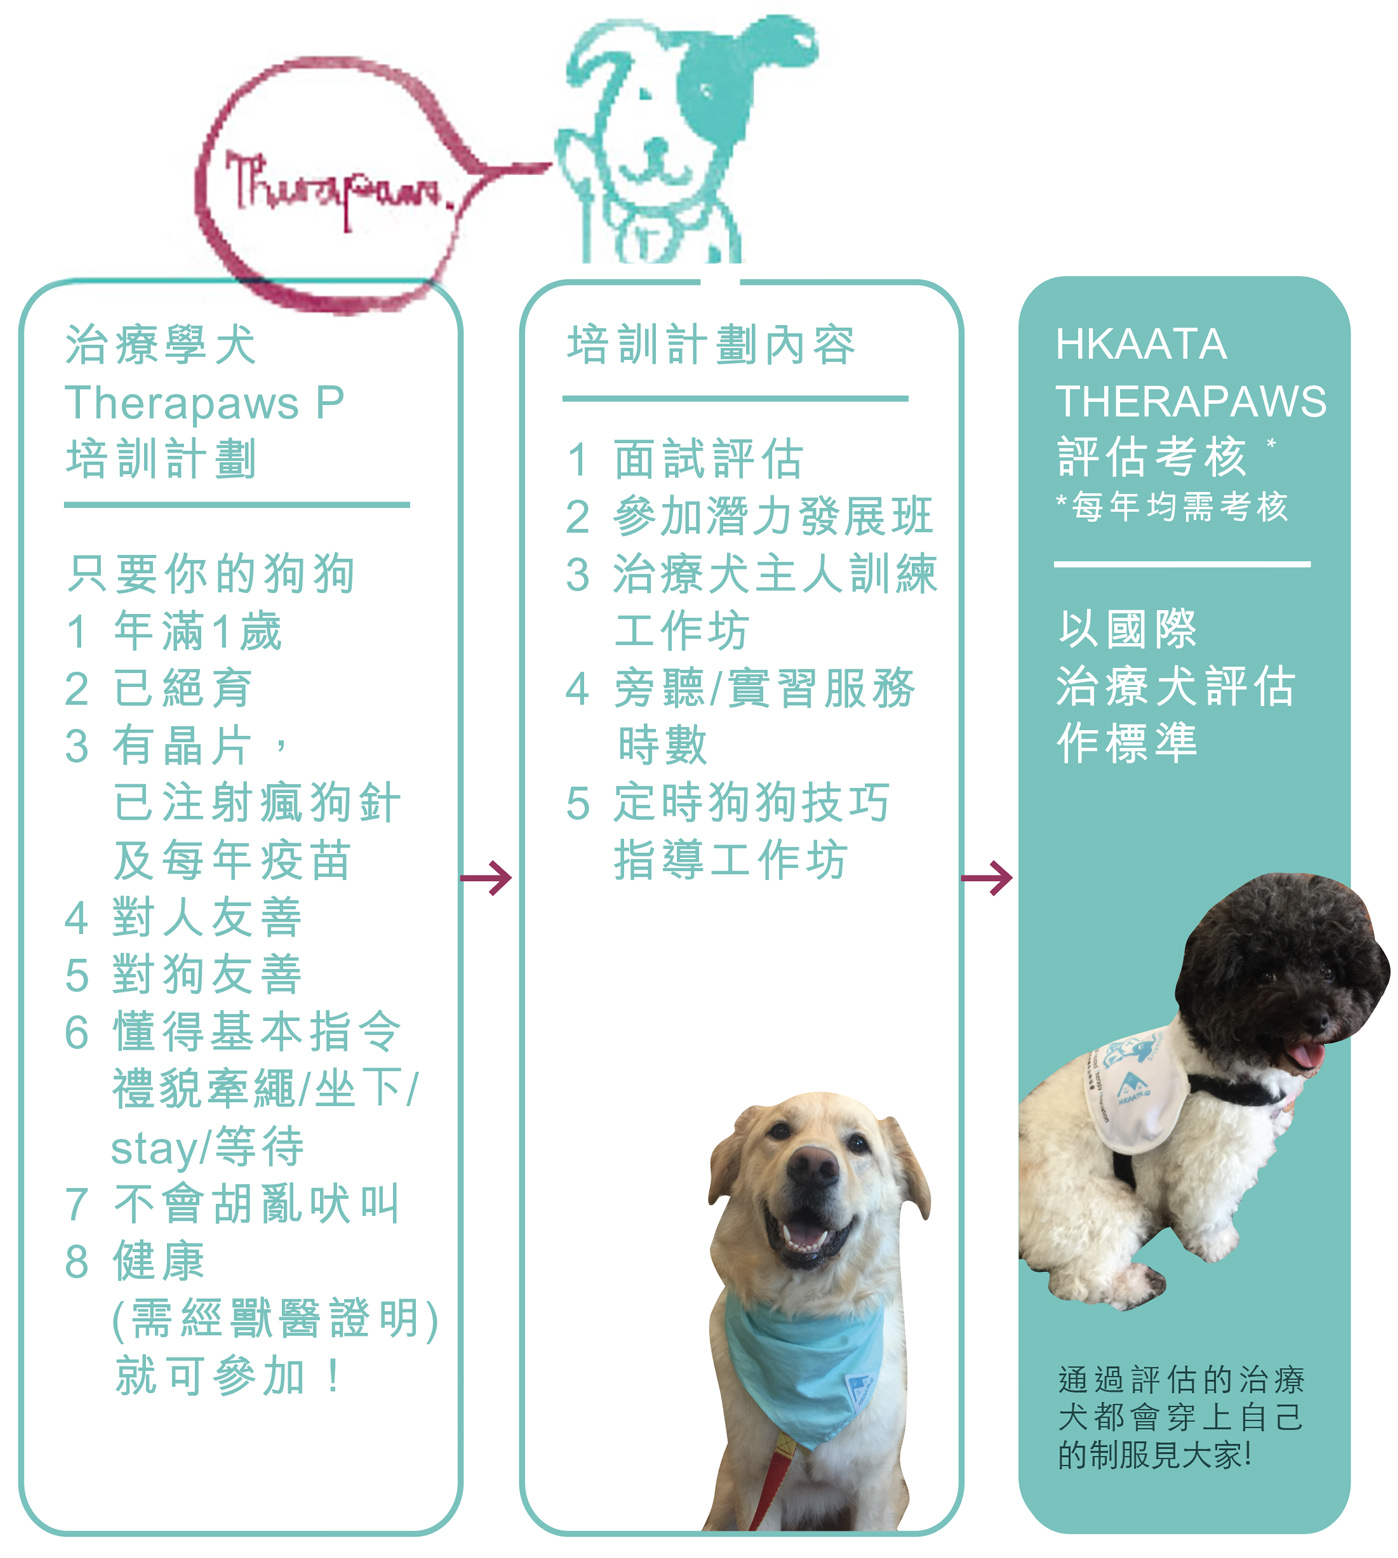 HKAATA THERAPAWS 治療犬及 THERAPAWS P 治療學犬培訓計劃